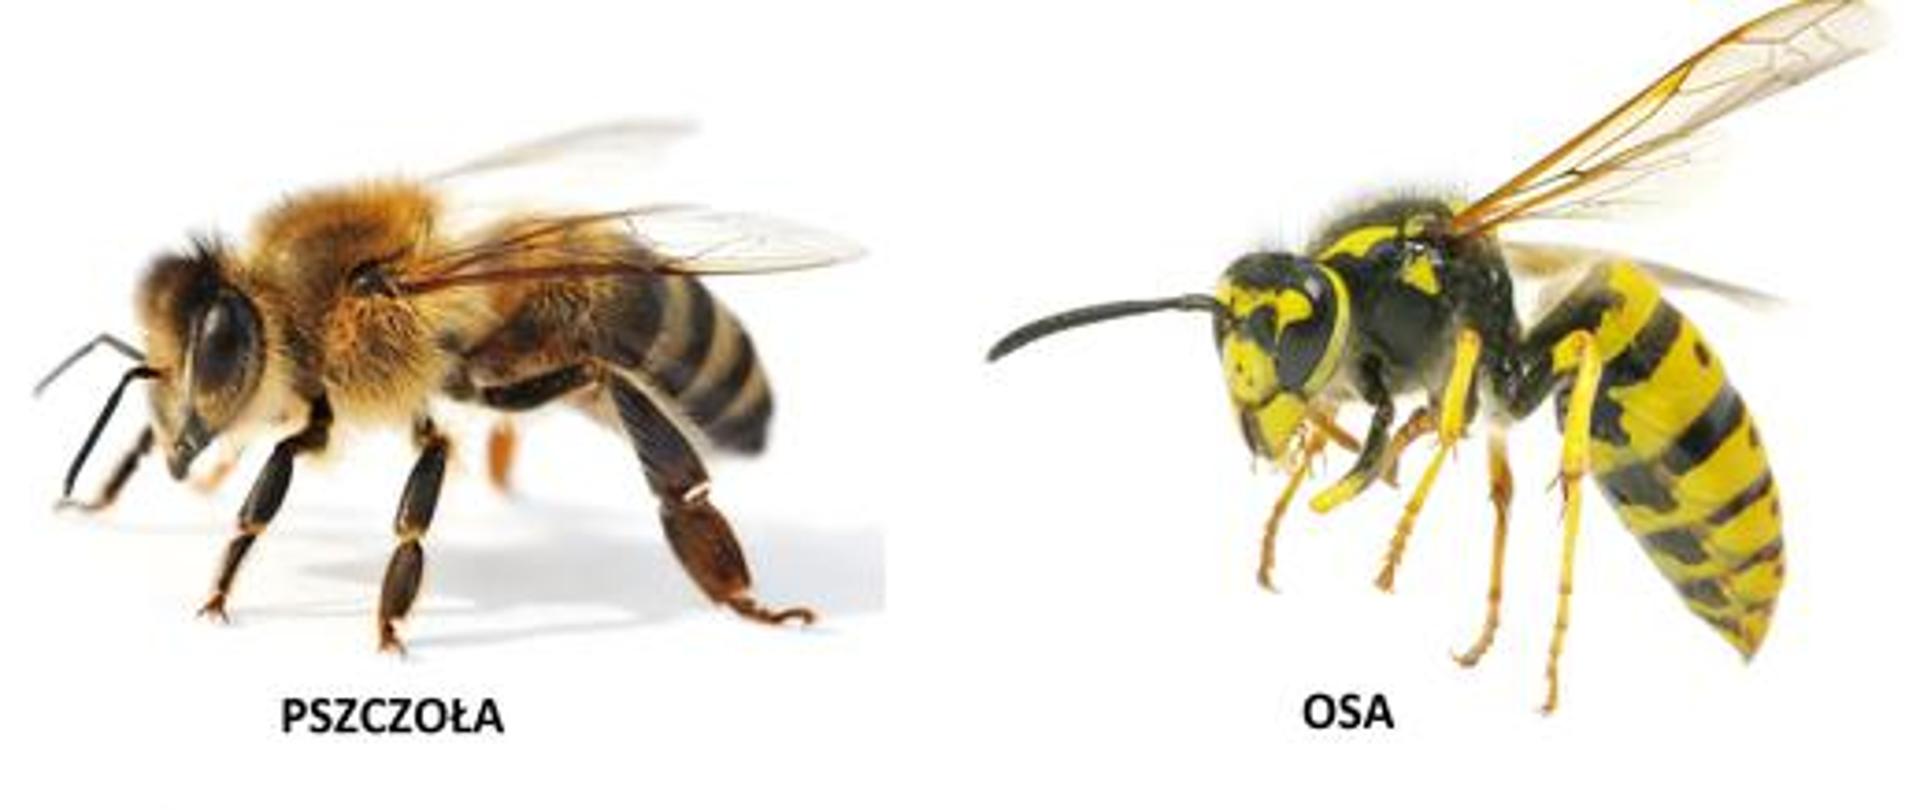 Zdjecię przedstawia pszczołę i osę z podpisem